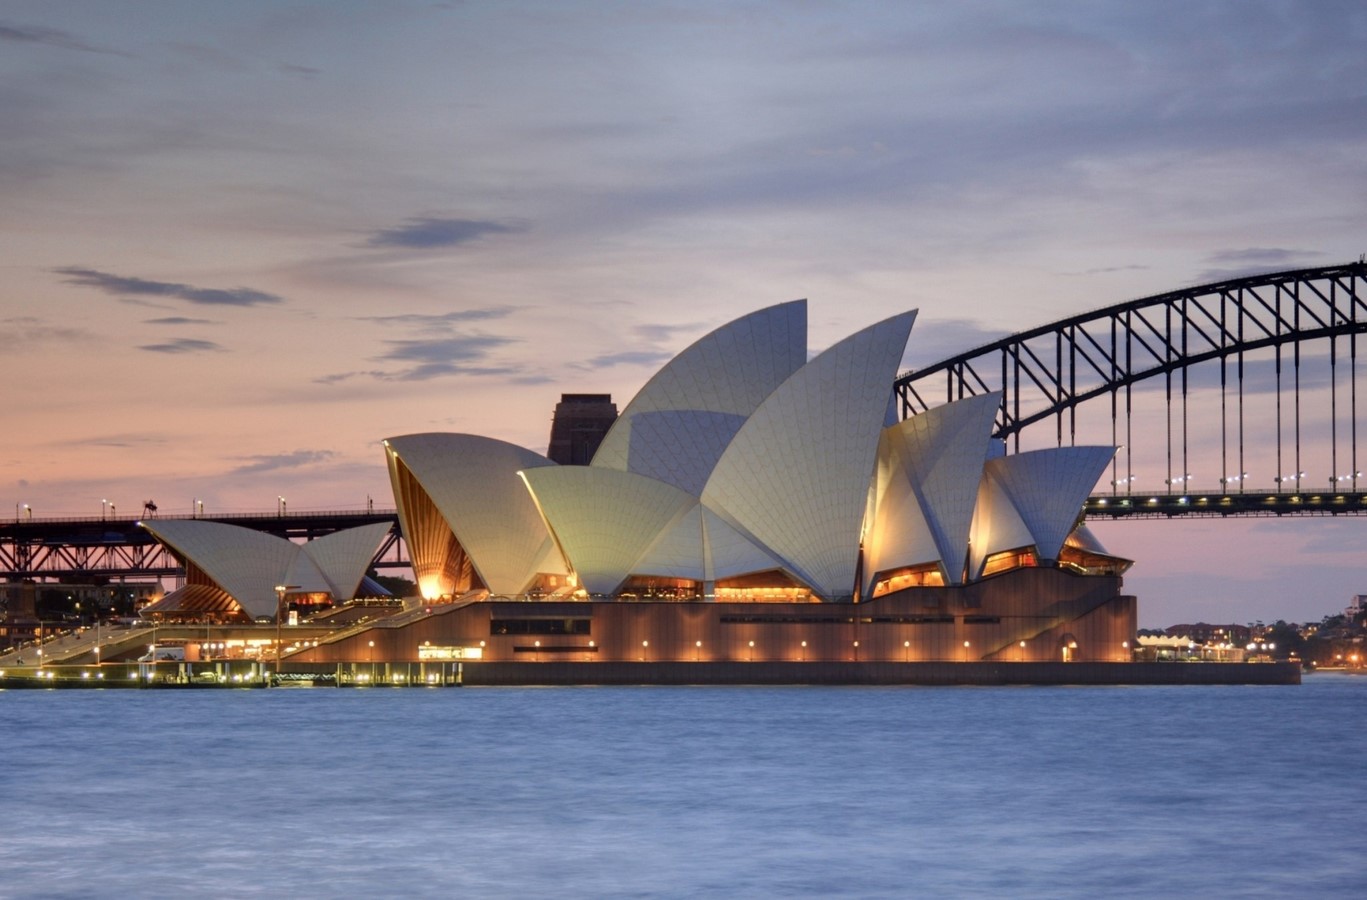 Sydney Opera House, Sydney, Australia by Jorn Utzon  - Sheet1